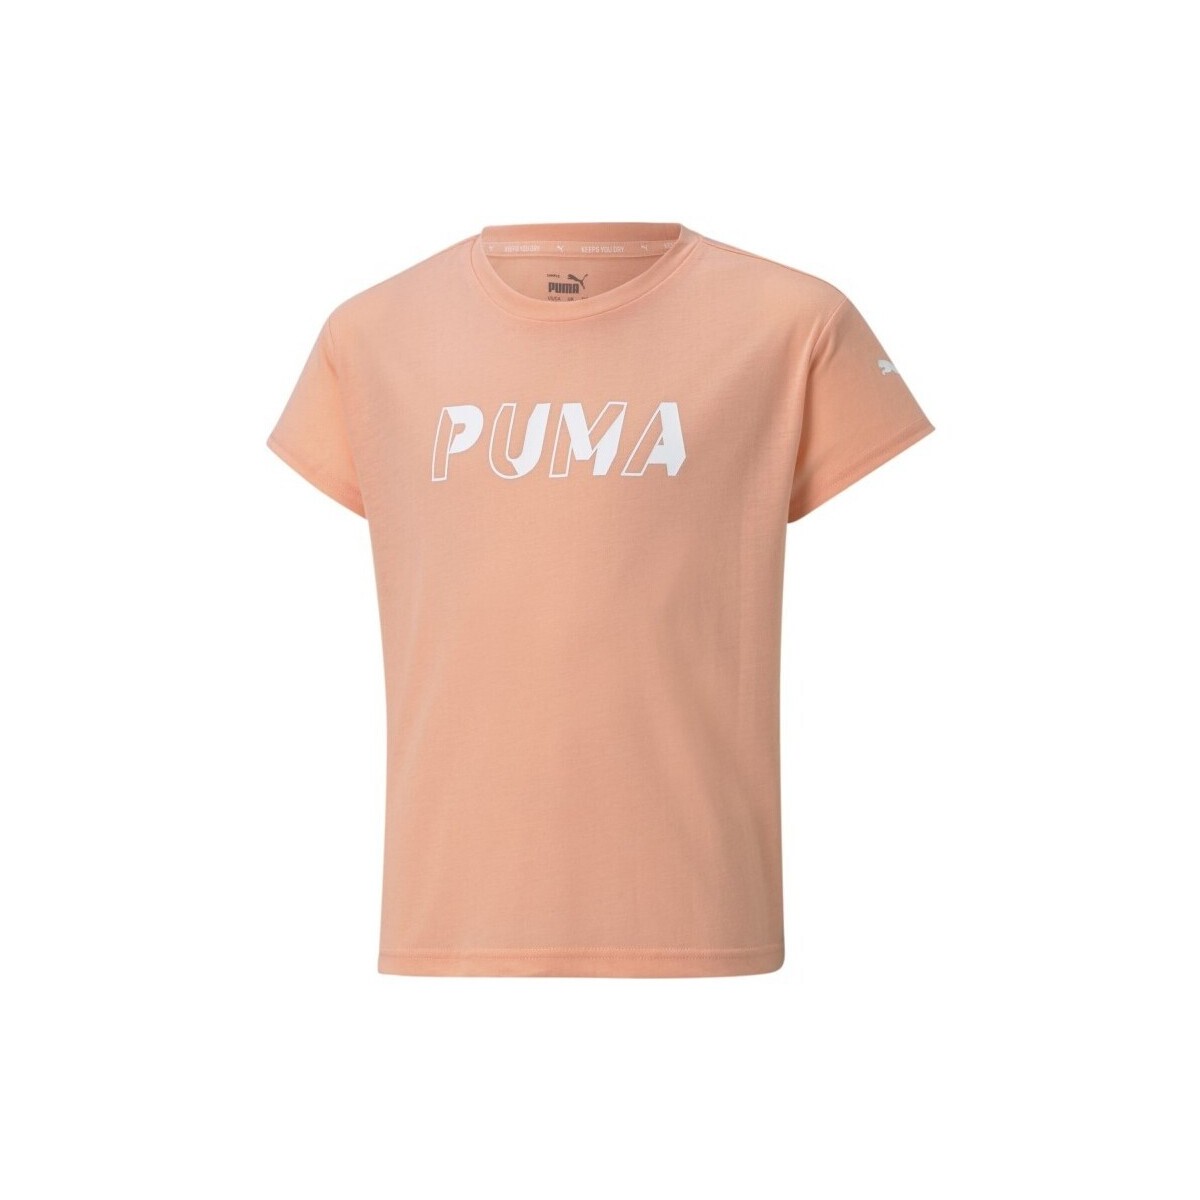 Vêtements Fille T-shirts manches courtes Puma G MS LOGO TEE - APRICOT BLUSH - 152 Multicolore